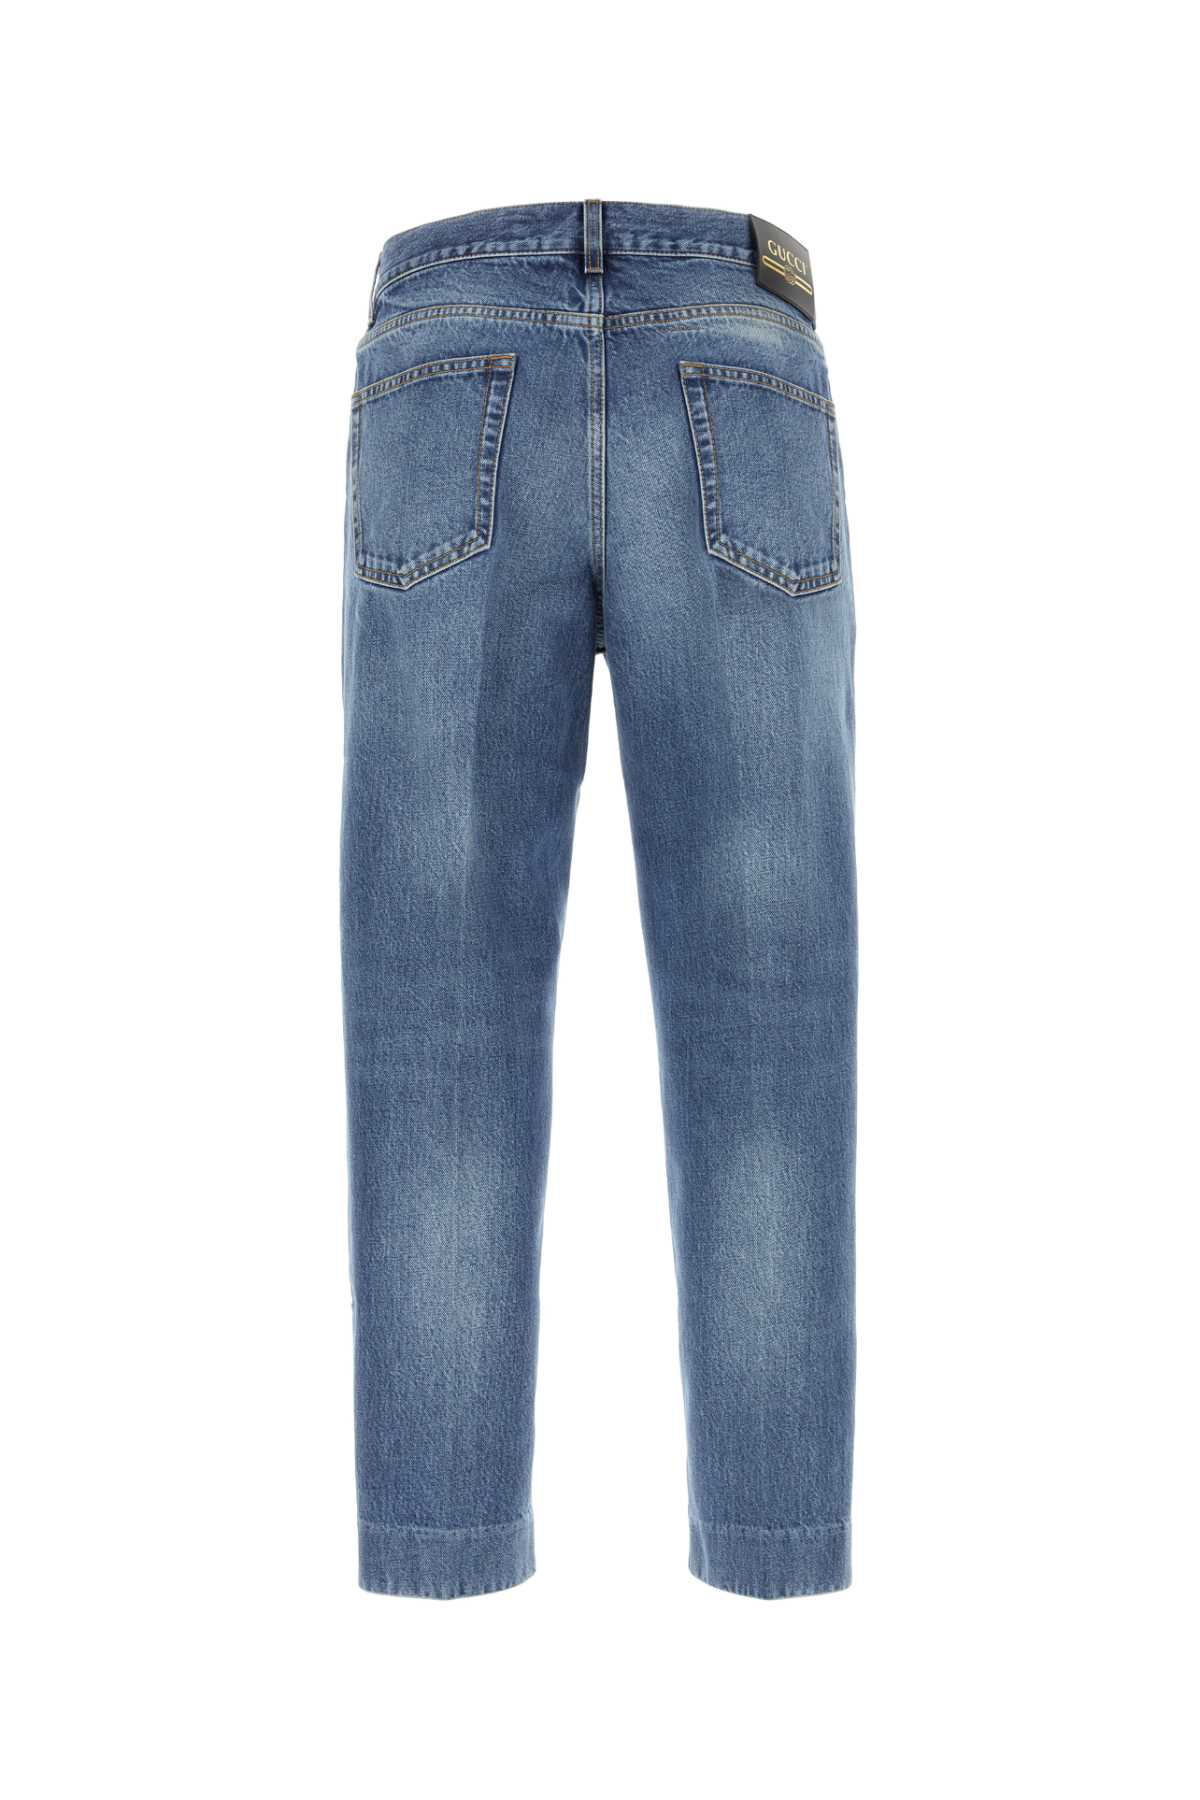 Gucci Denim Jeans In Light Blue